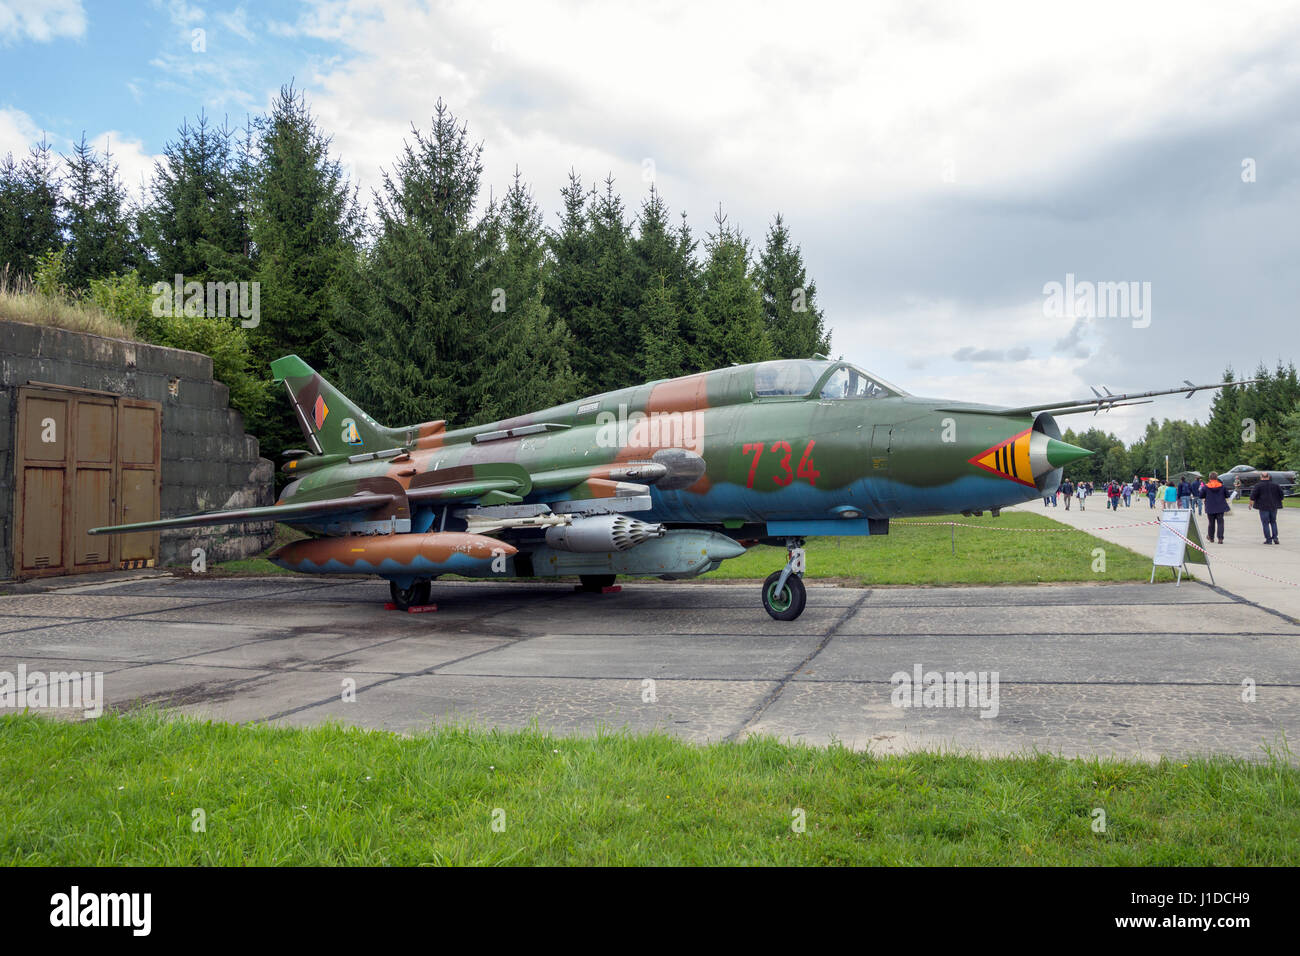 LAAGE, Deutschland - 23. August 2014: Kalter Krieg Ära östlichen deutschen Luftwaffe Sukhoi Su-22 Fitter Kampfjet Flugzeug auf dem Display bei Laage Airbase. Stockfoto